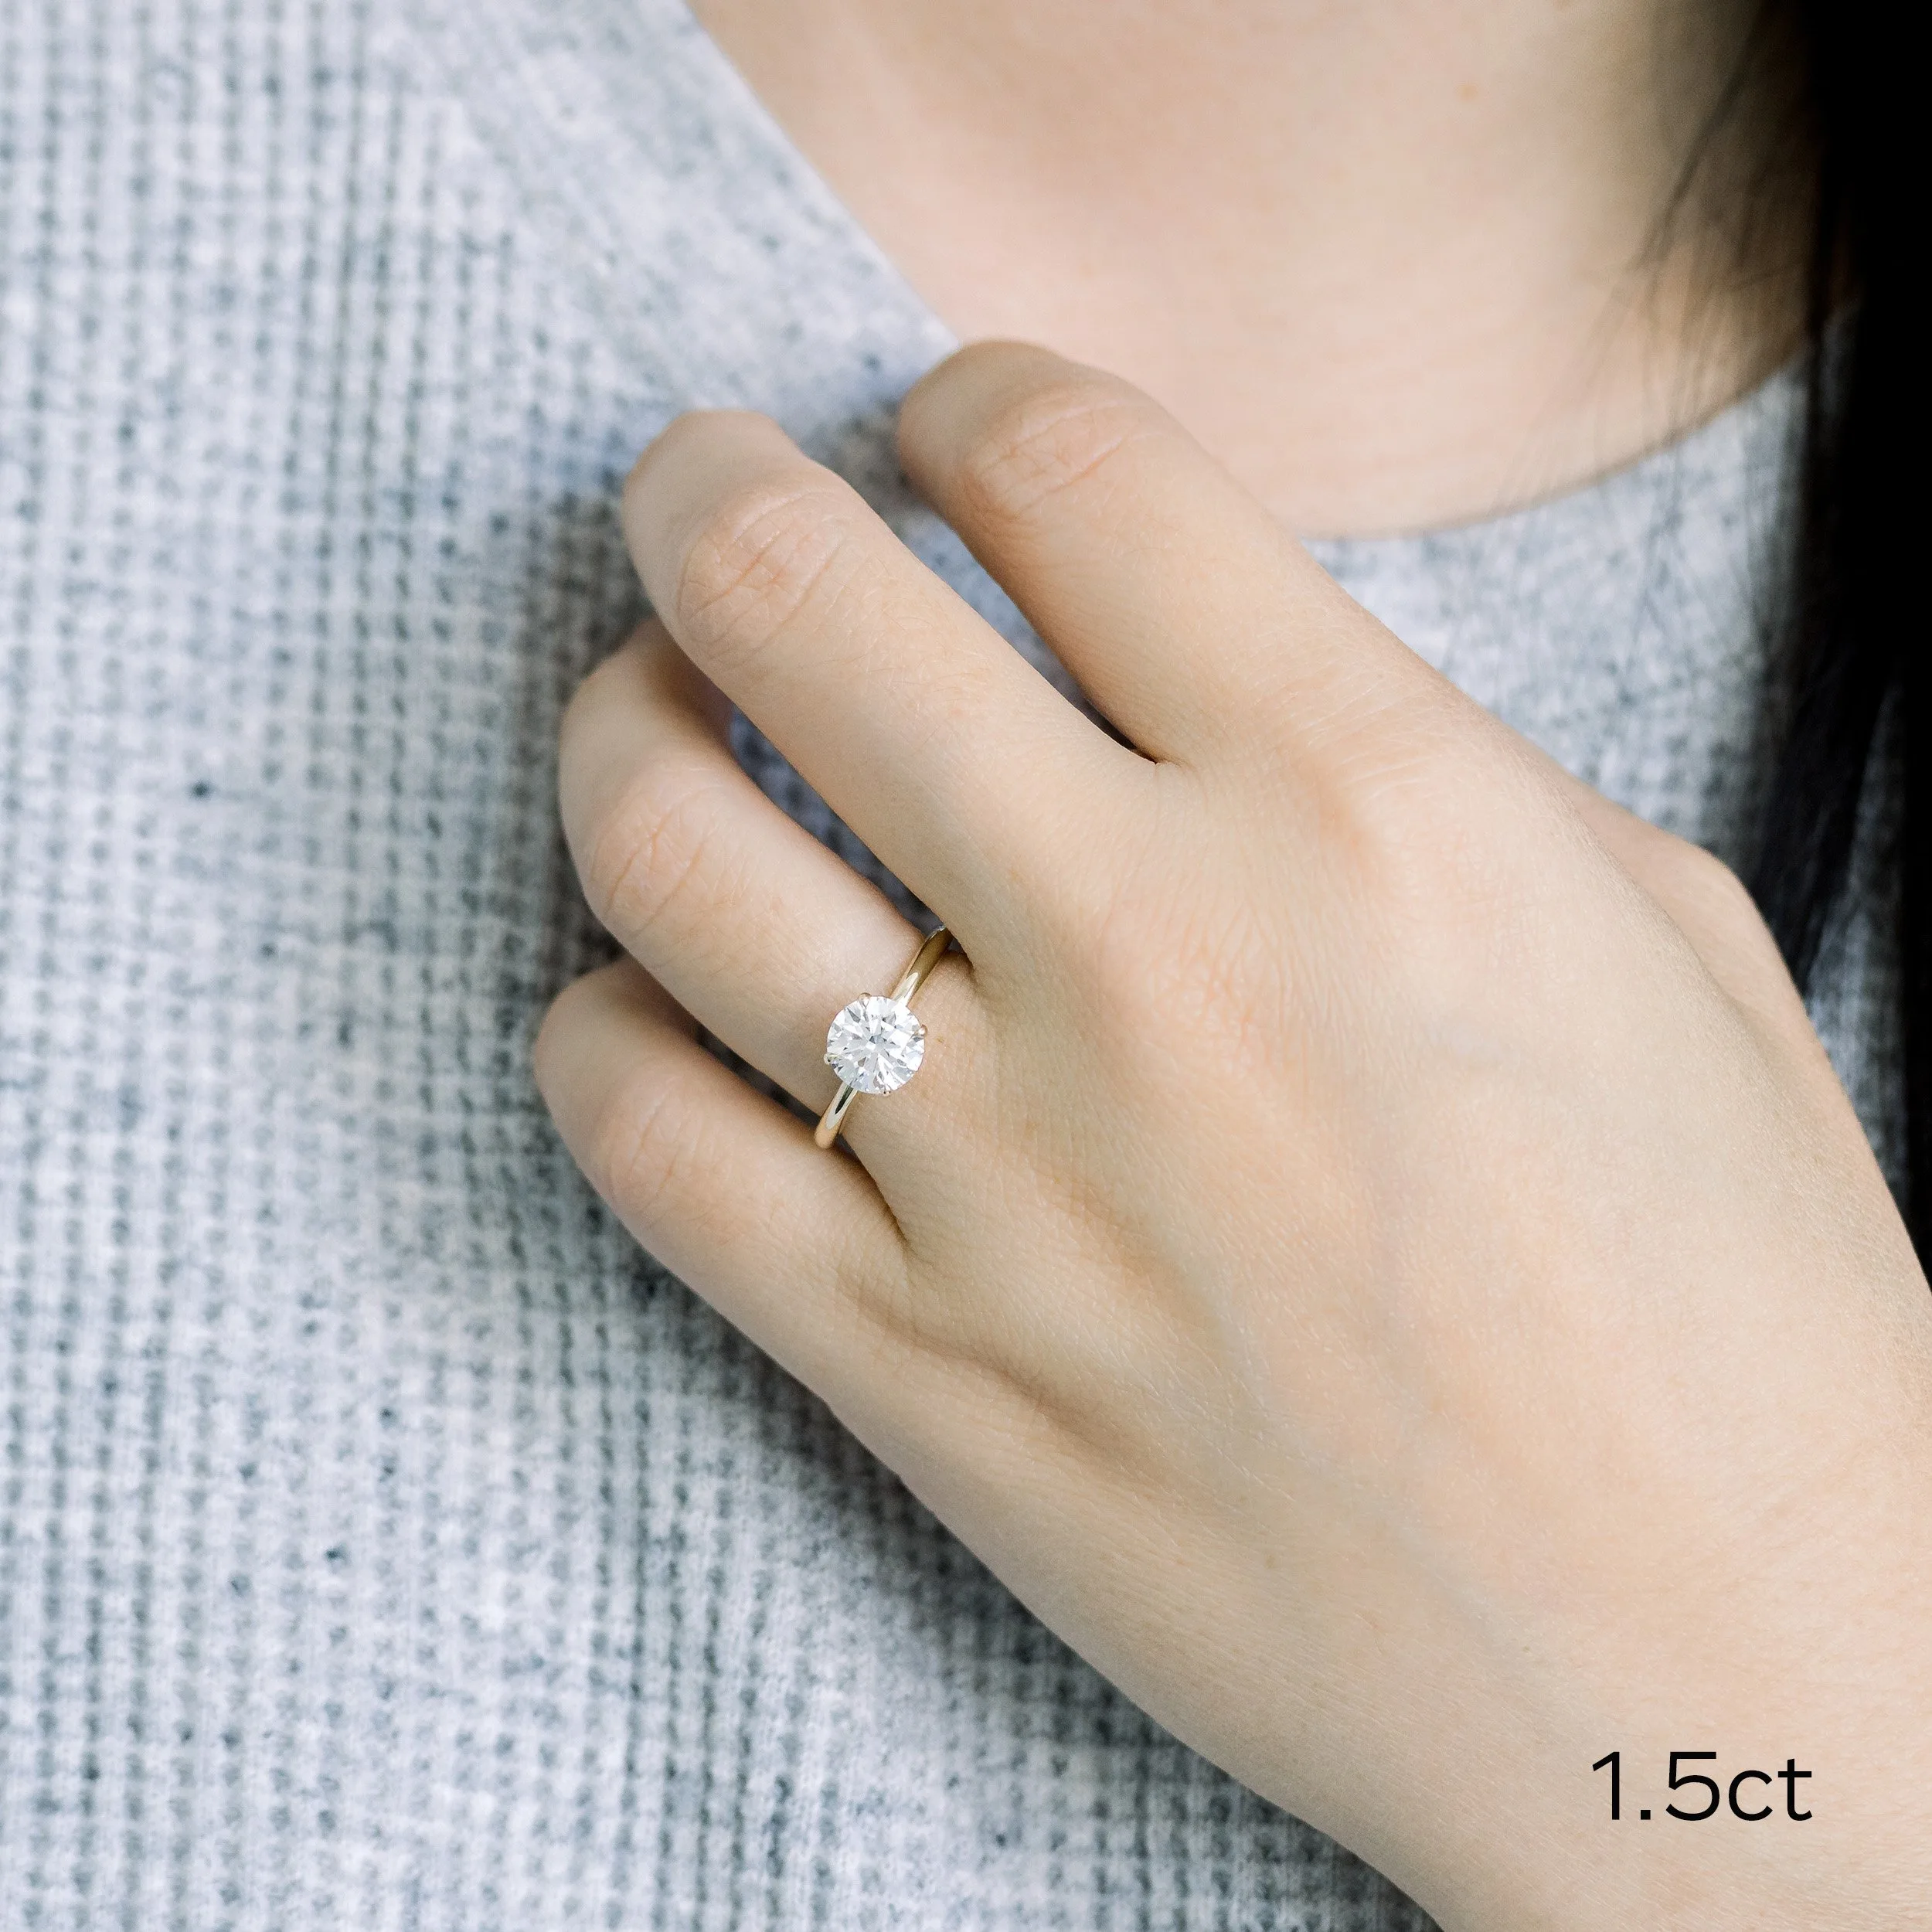 platinum 1.5ct round lab created diamond solitaire engagement ring ada diamonds design ad 066 on model